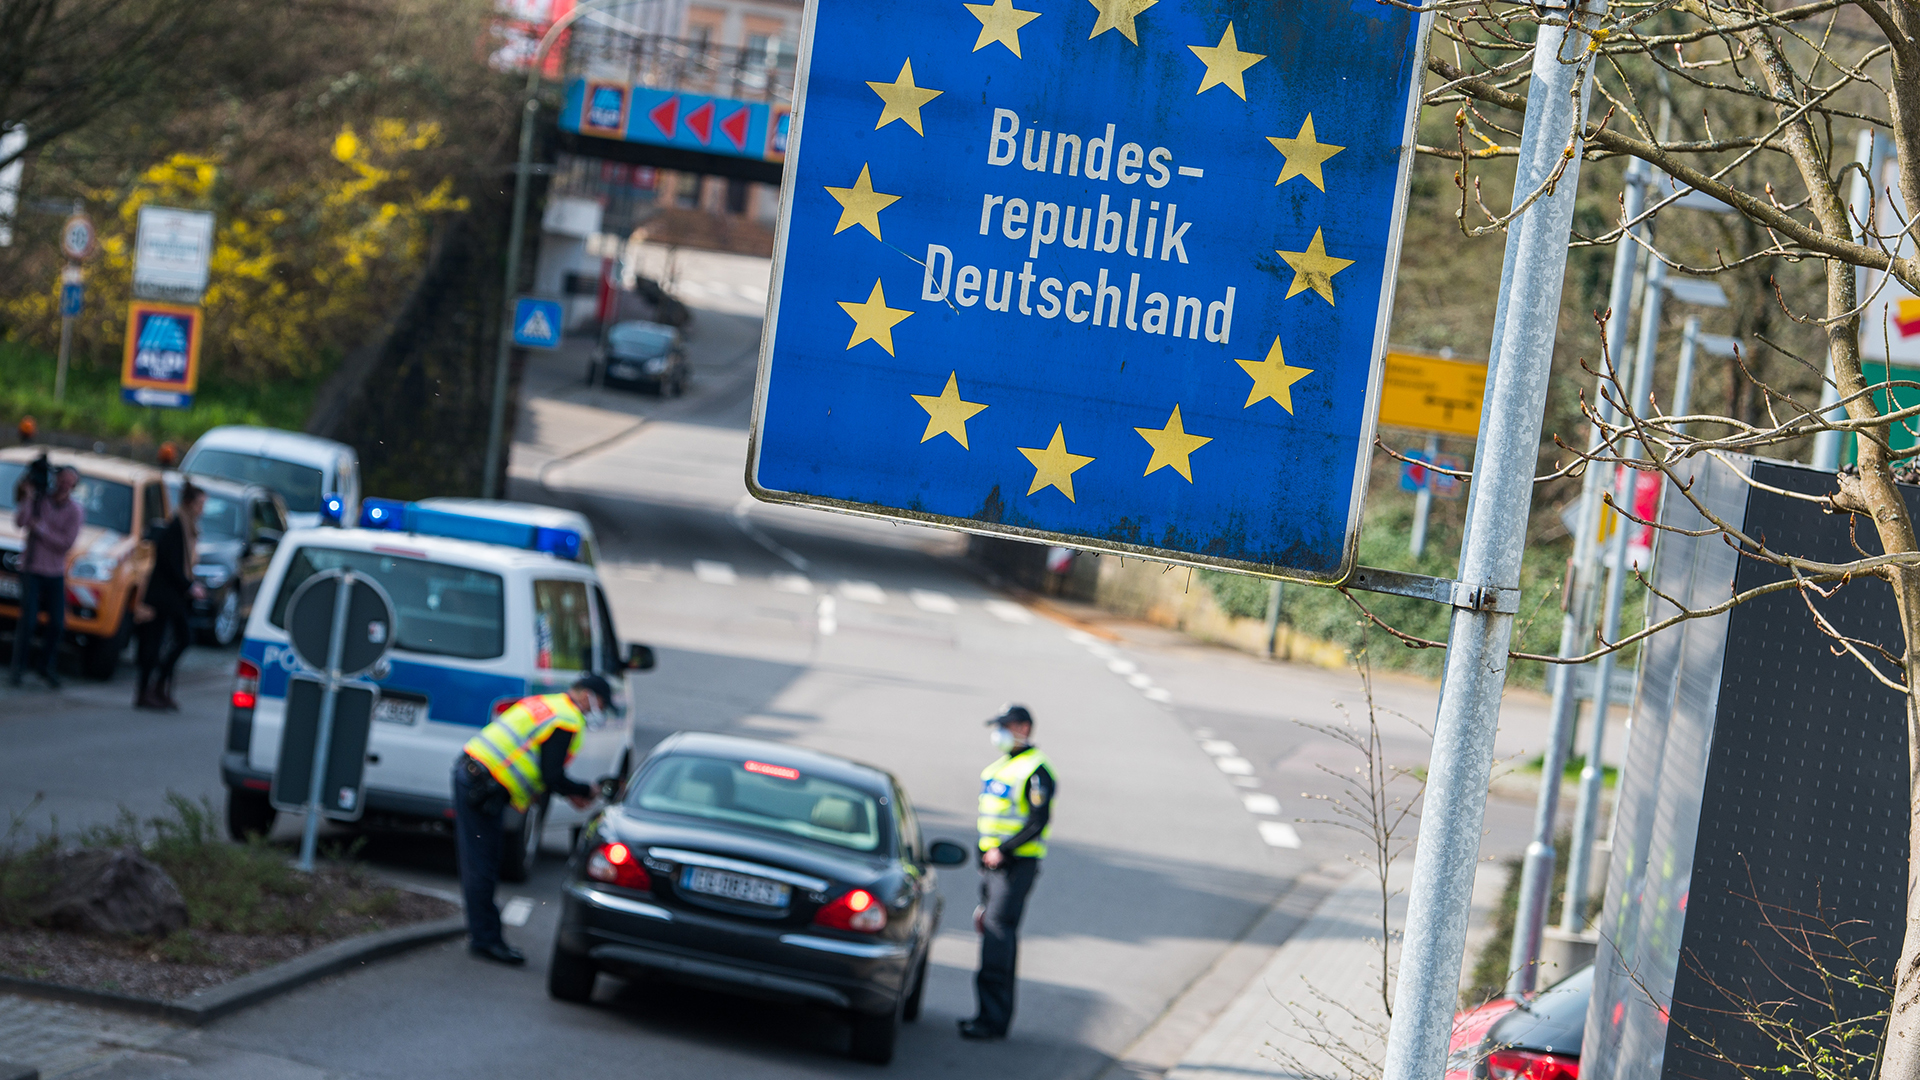 Beamte der Bundespolizei kontrollieren ein französisches Fahrzeugan der Grenze zu Deutschland. (Archivbild)| Bildquelle: dpa